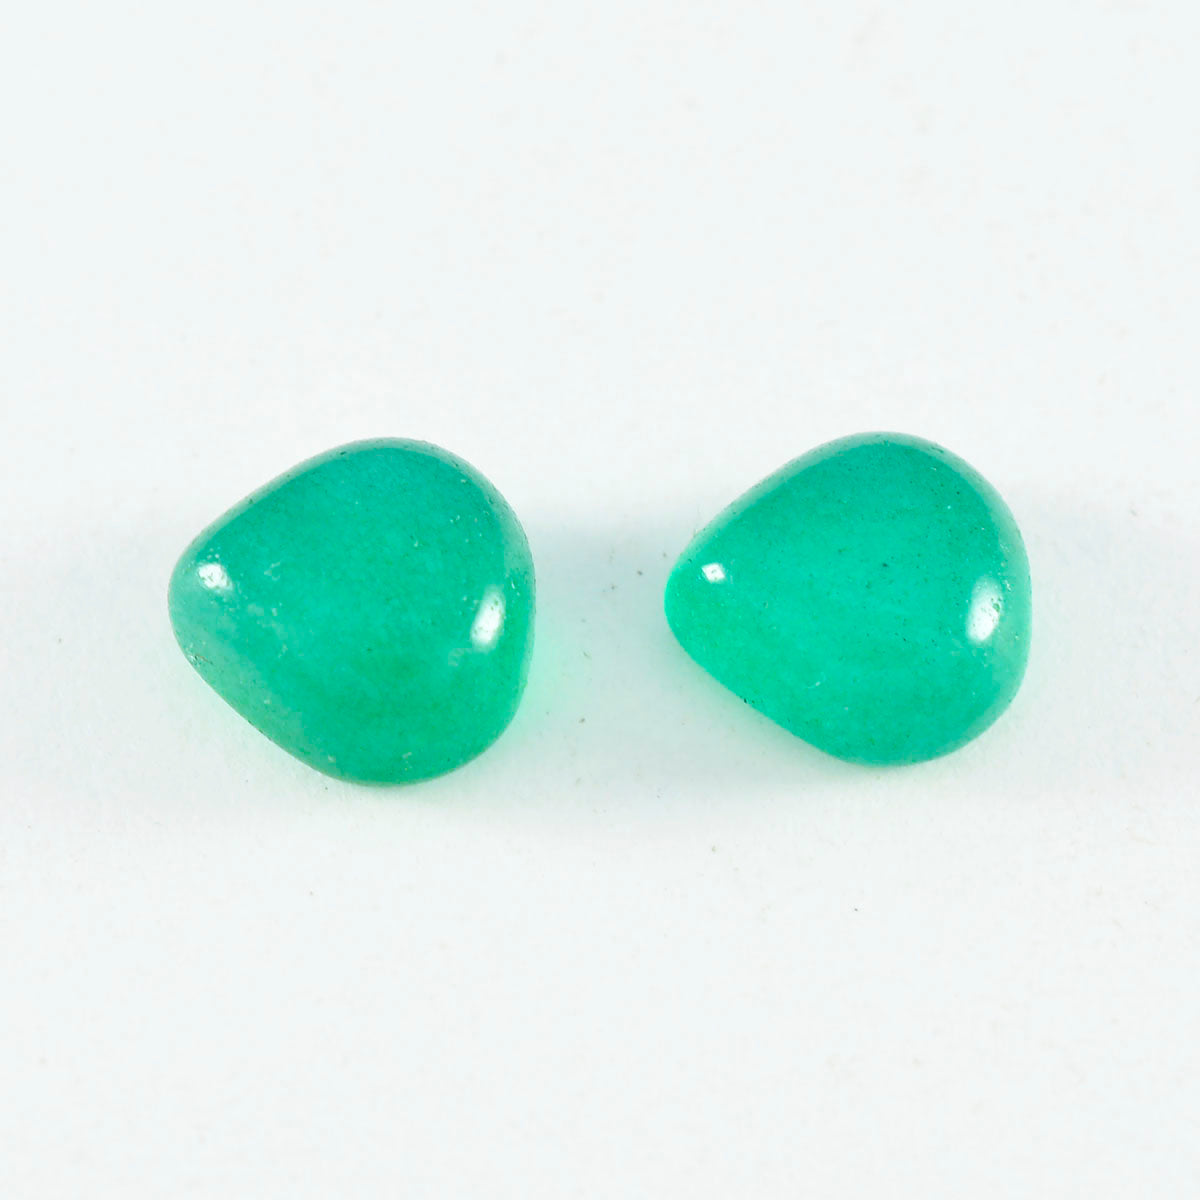 Riyogems 1 Stück grüner Onyx-Cabochon, 8 x 8 mm, Herzform, hochwertiger Edelstein